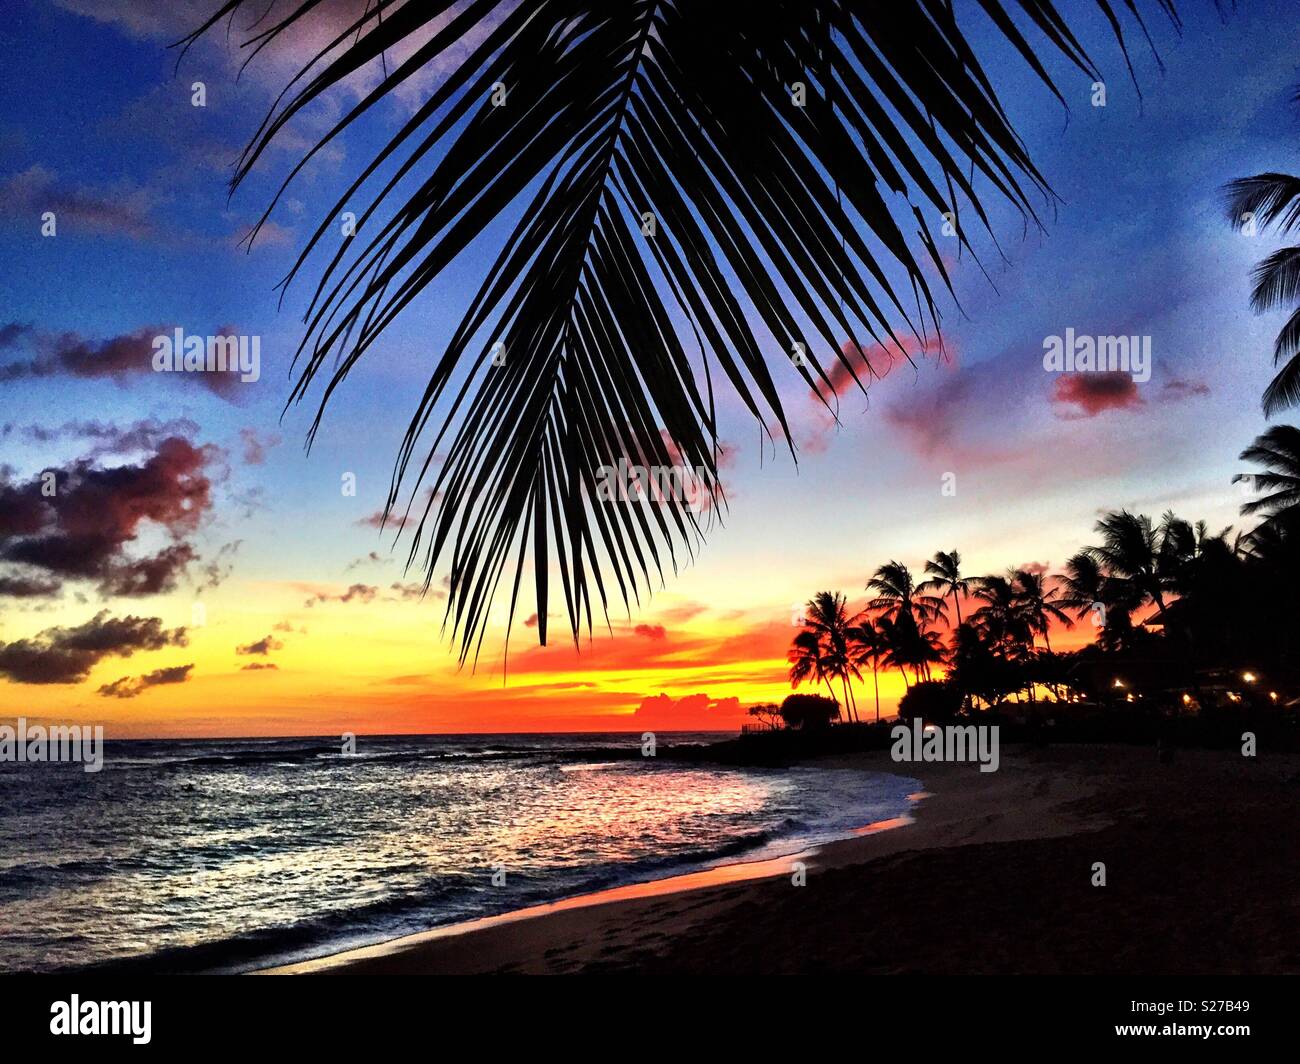 Tropical island paradise sunset Stock Photo